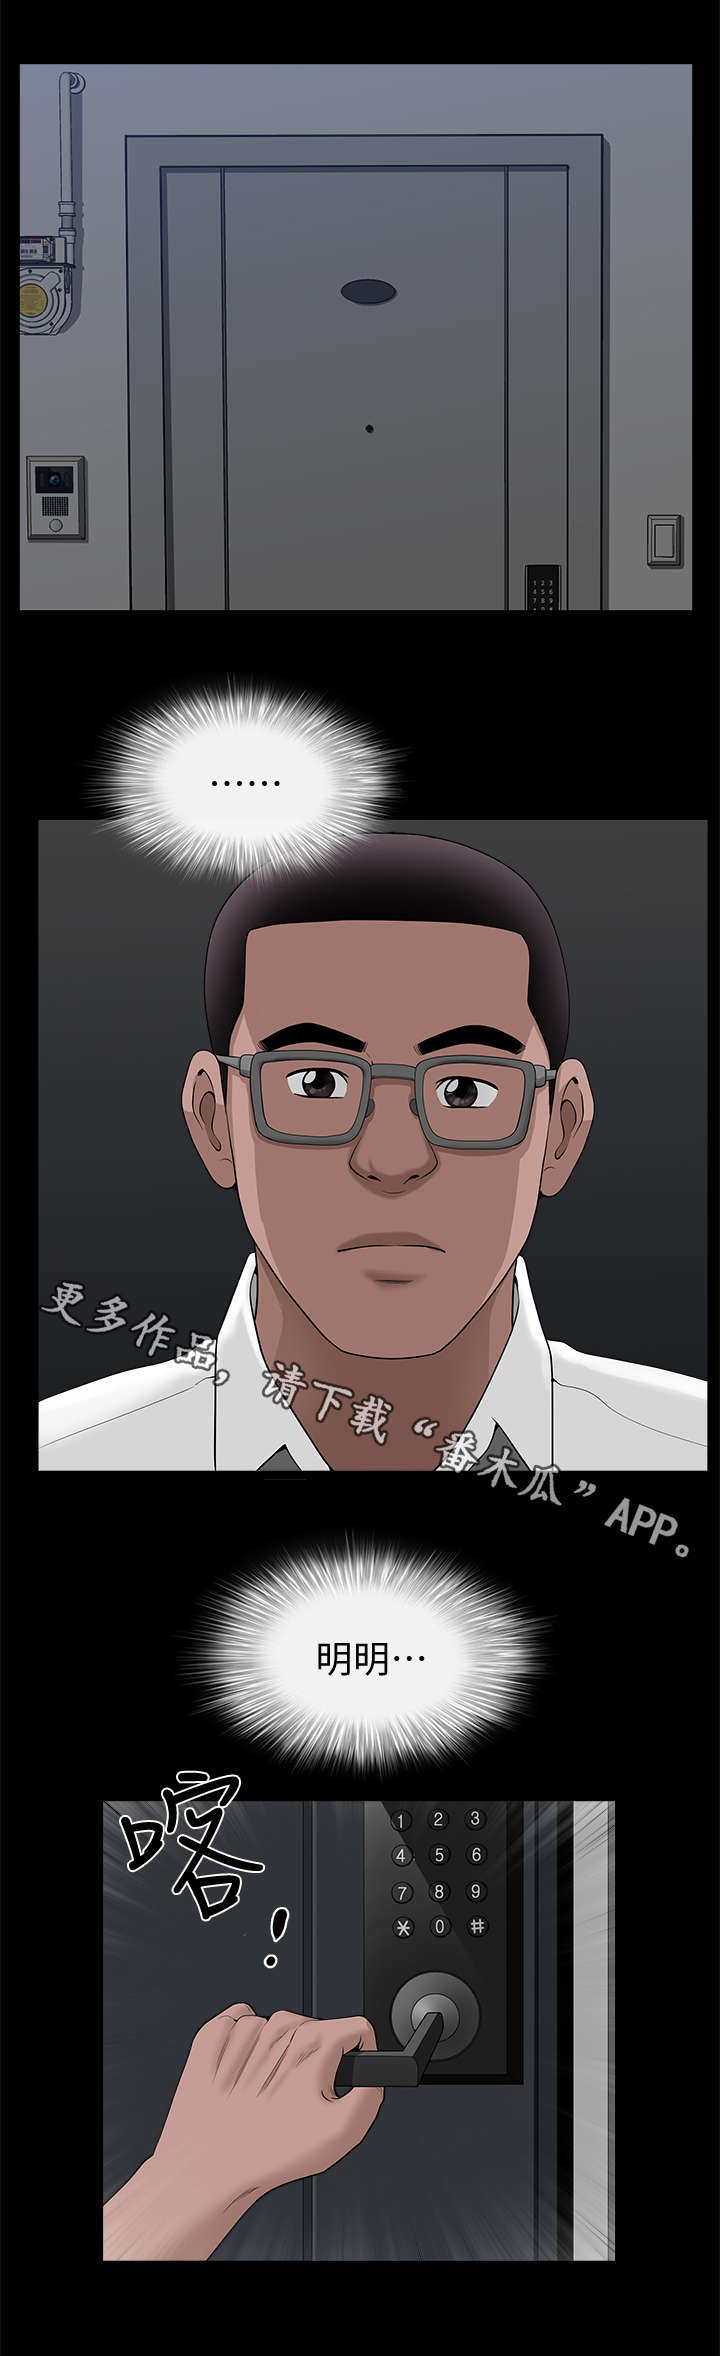 韩国漫画《相互隐瞒》完整版全文在线阅读